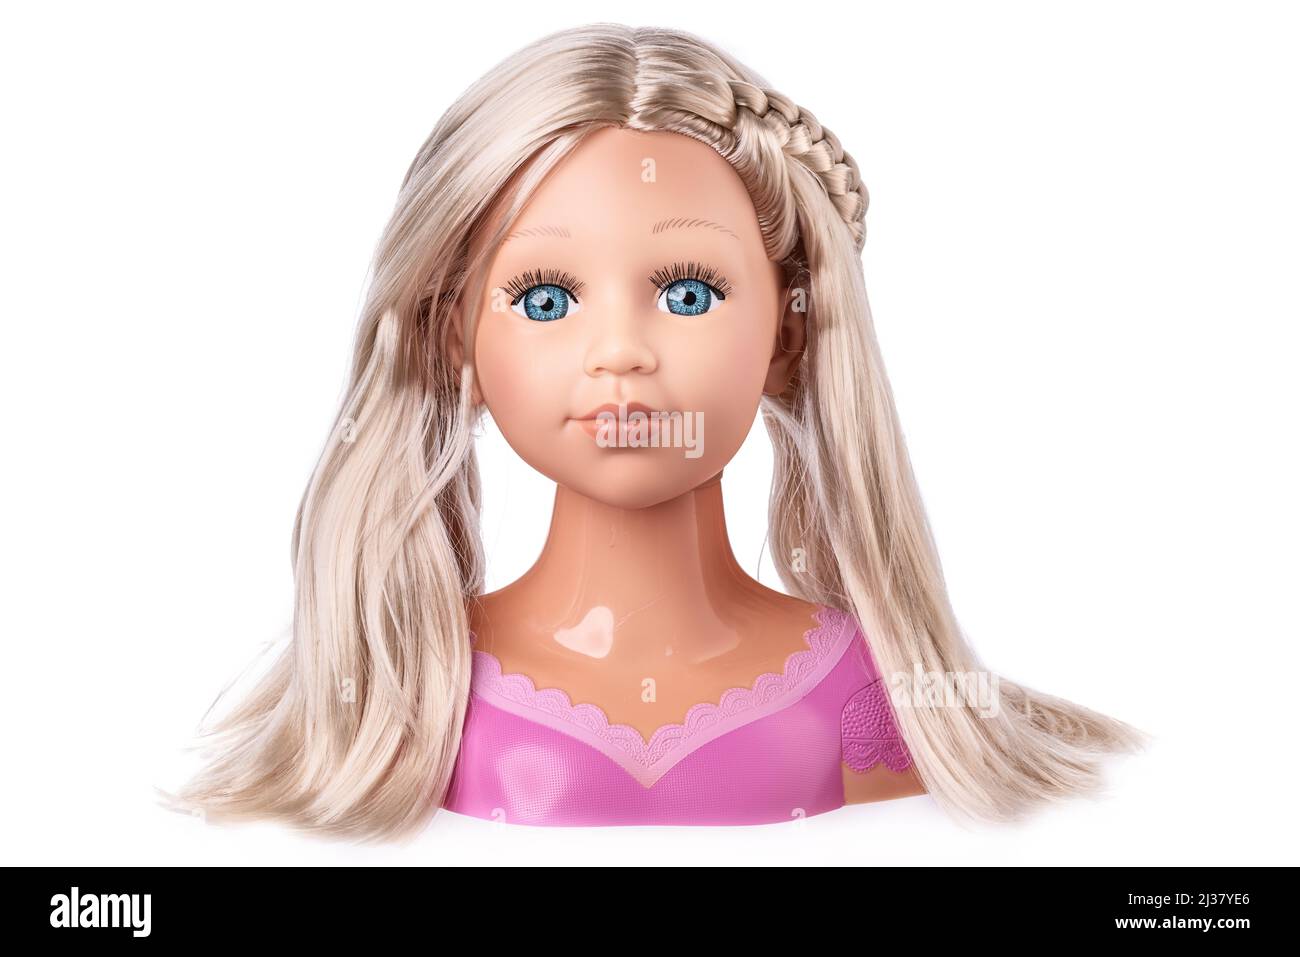 Make-up und Friseurkopf einer schönen Puppe mit echtem Haut- und Gesichtsausdruck Stockfoto